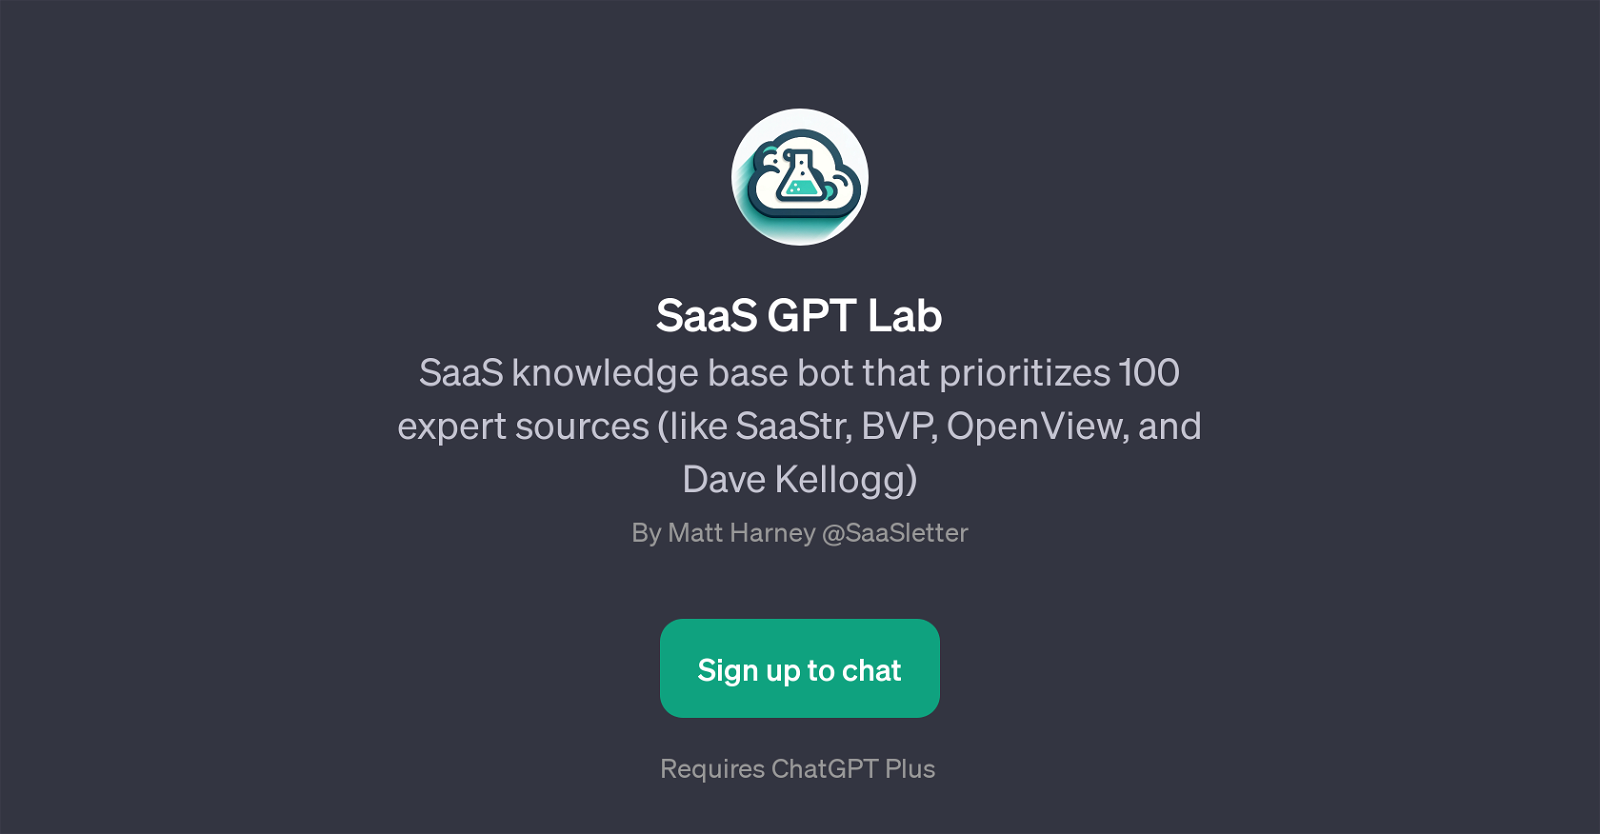 SaaS GPT Lab website